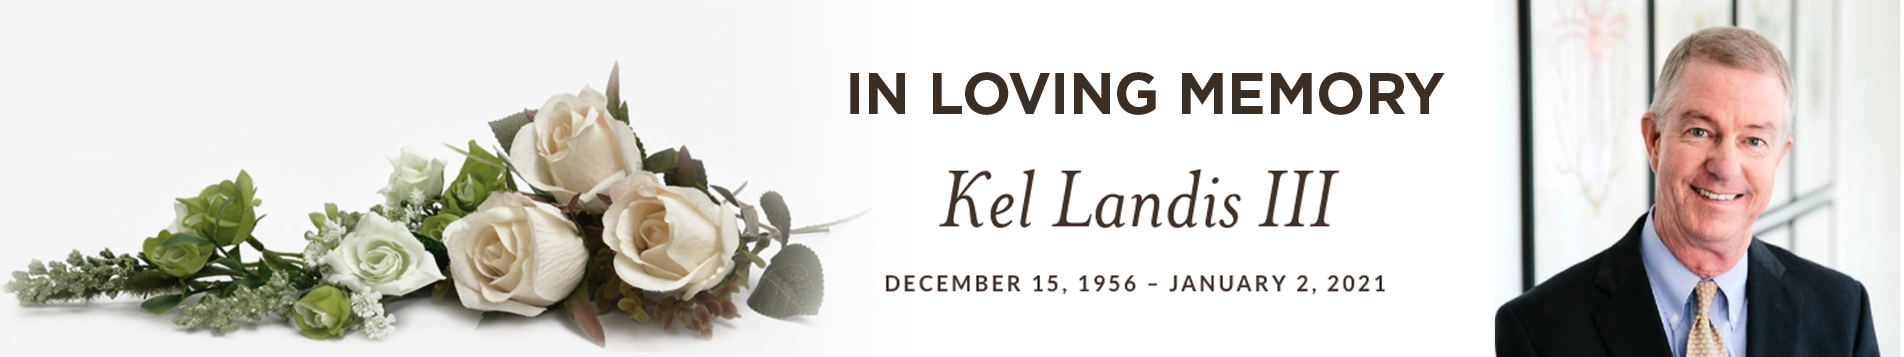 Howard Kelly Landis III - Memorial Service